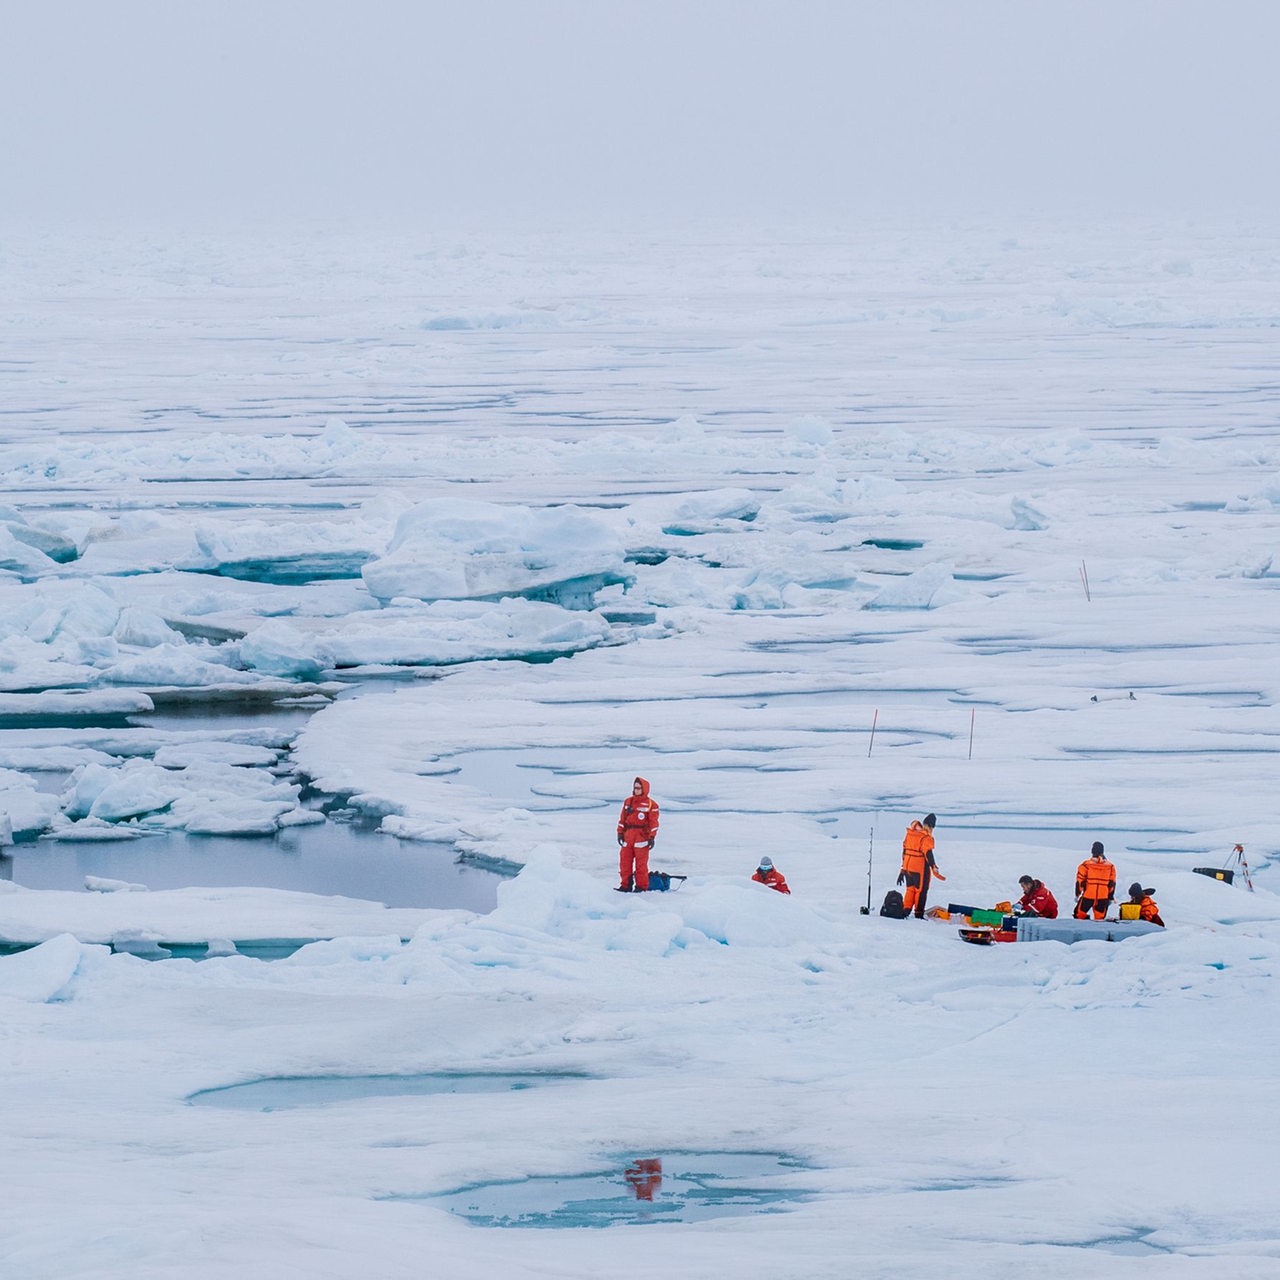 Ein Forscherteam auf einer riesigen Eisscholle, dazwischen offene Wasserflächen 